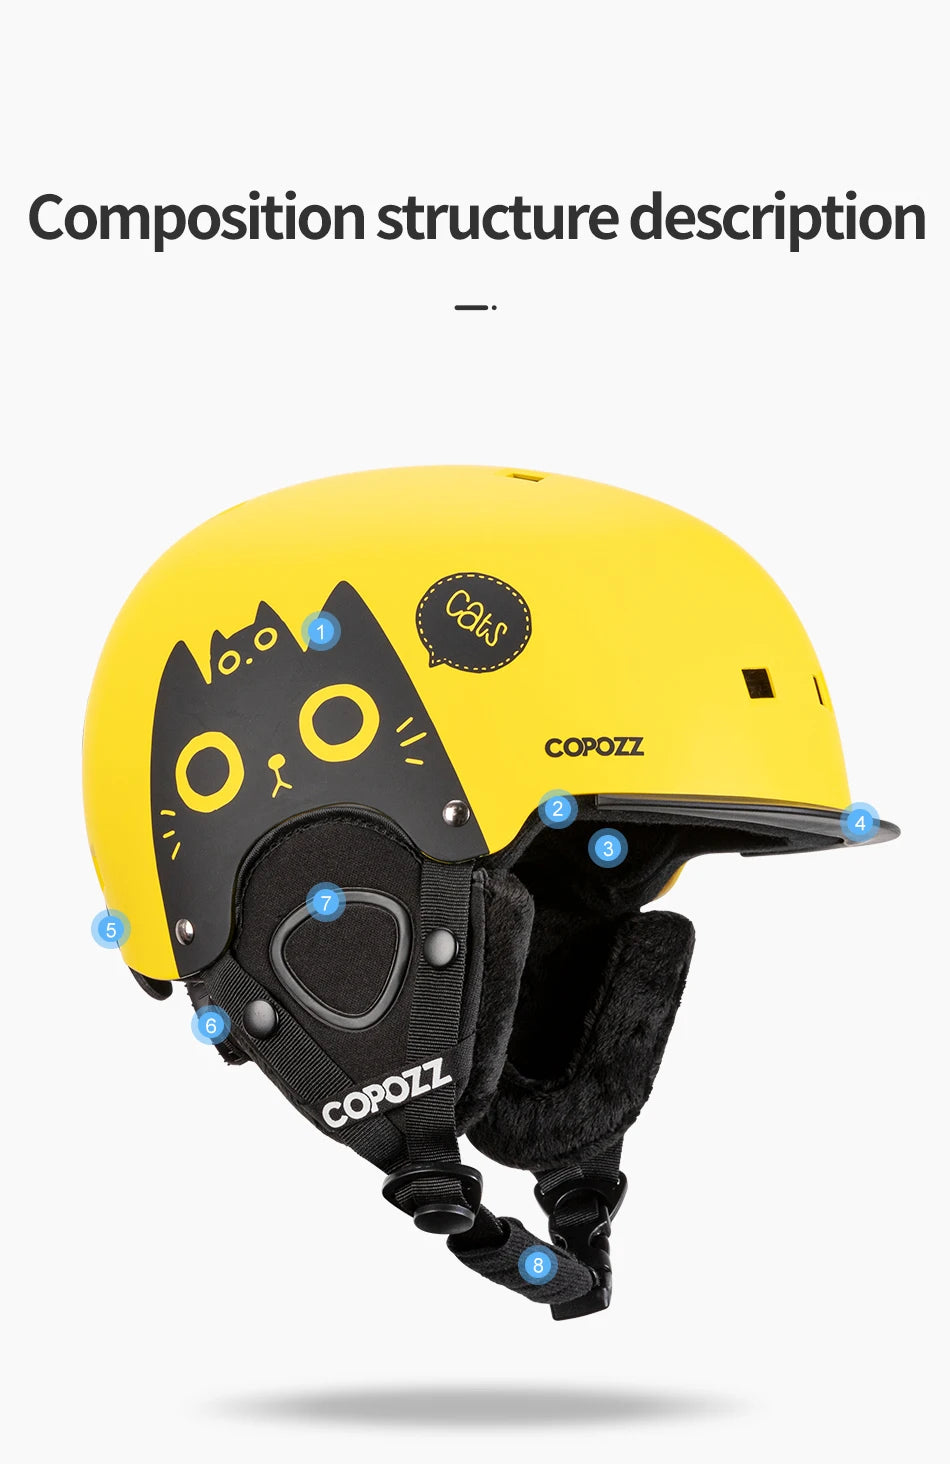 COPOZZ Cartoon Kids Helmet